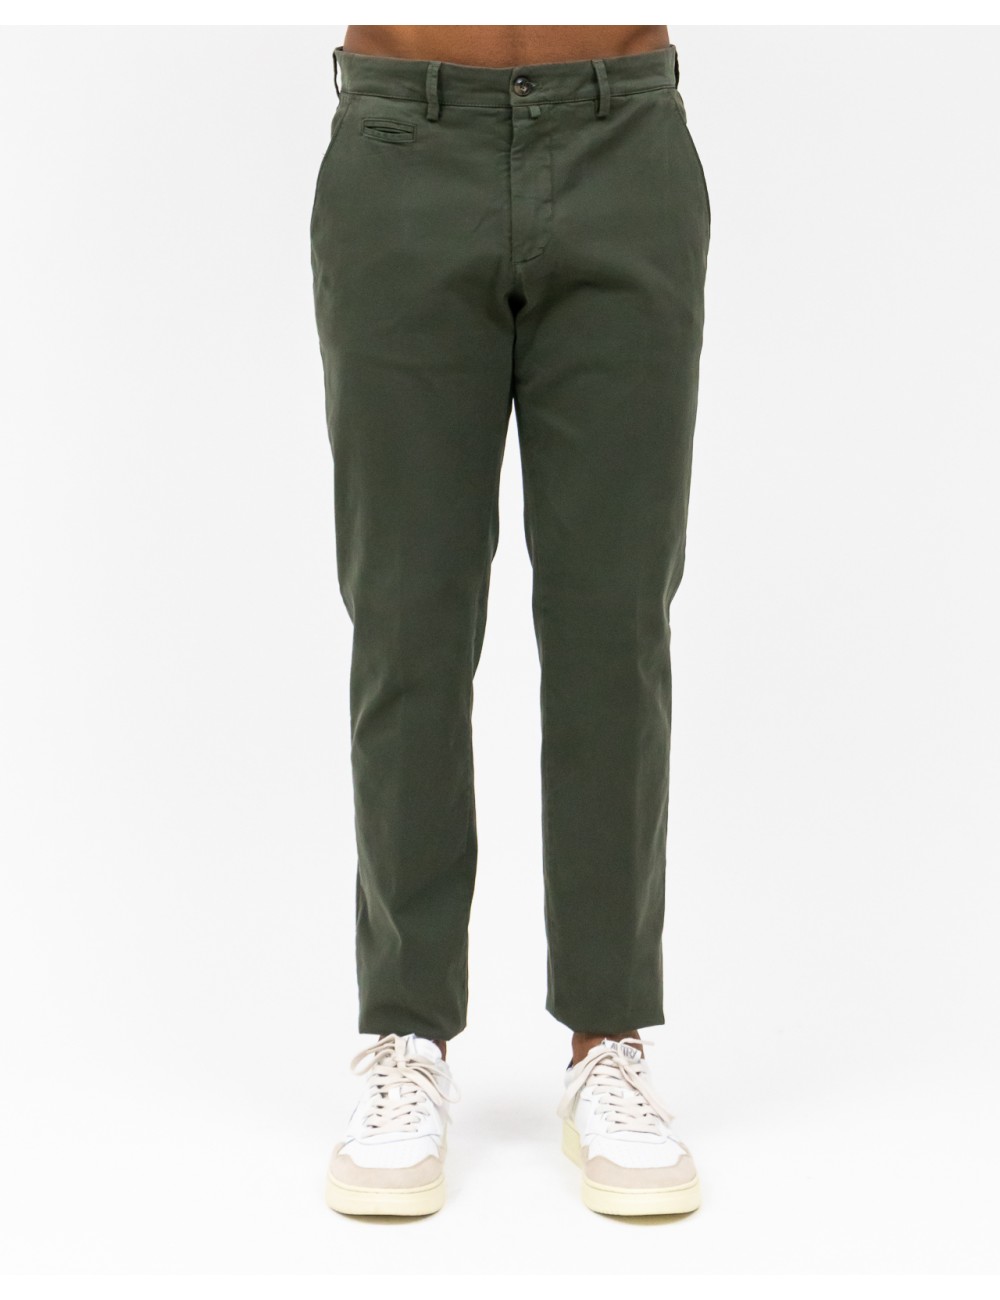 Briglia - Men's Green Trousers BG05 422008 00072 I22